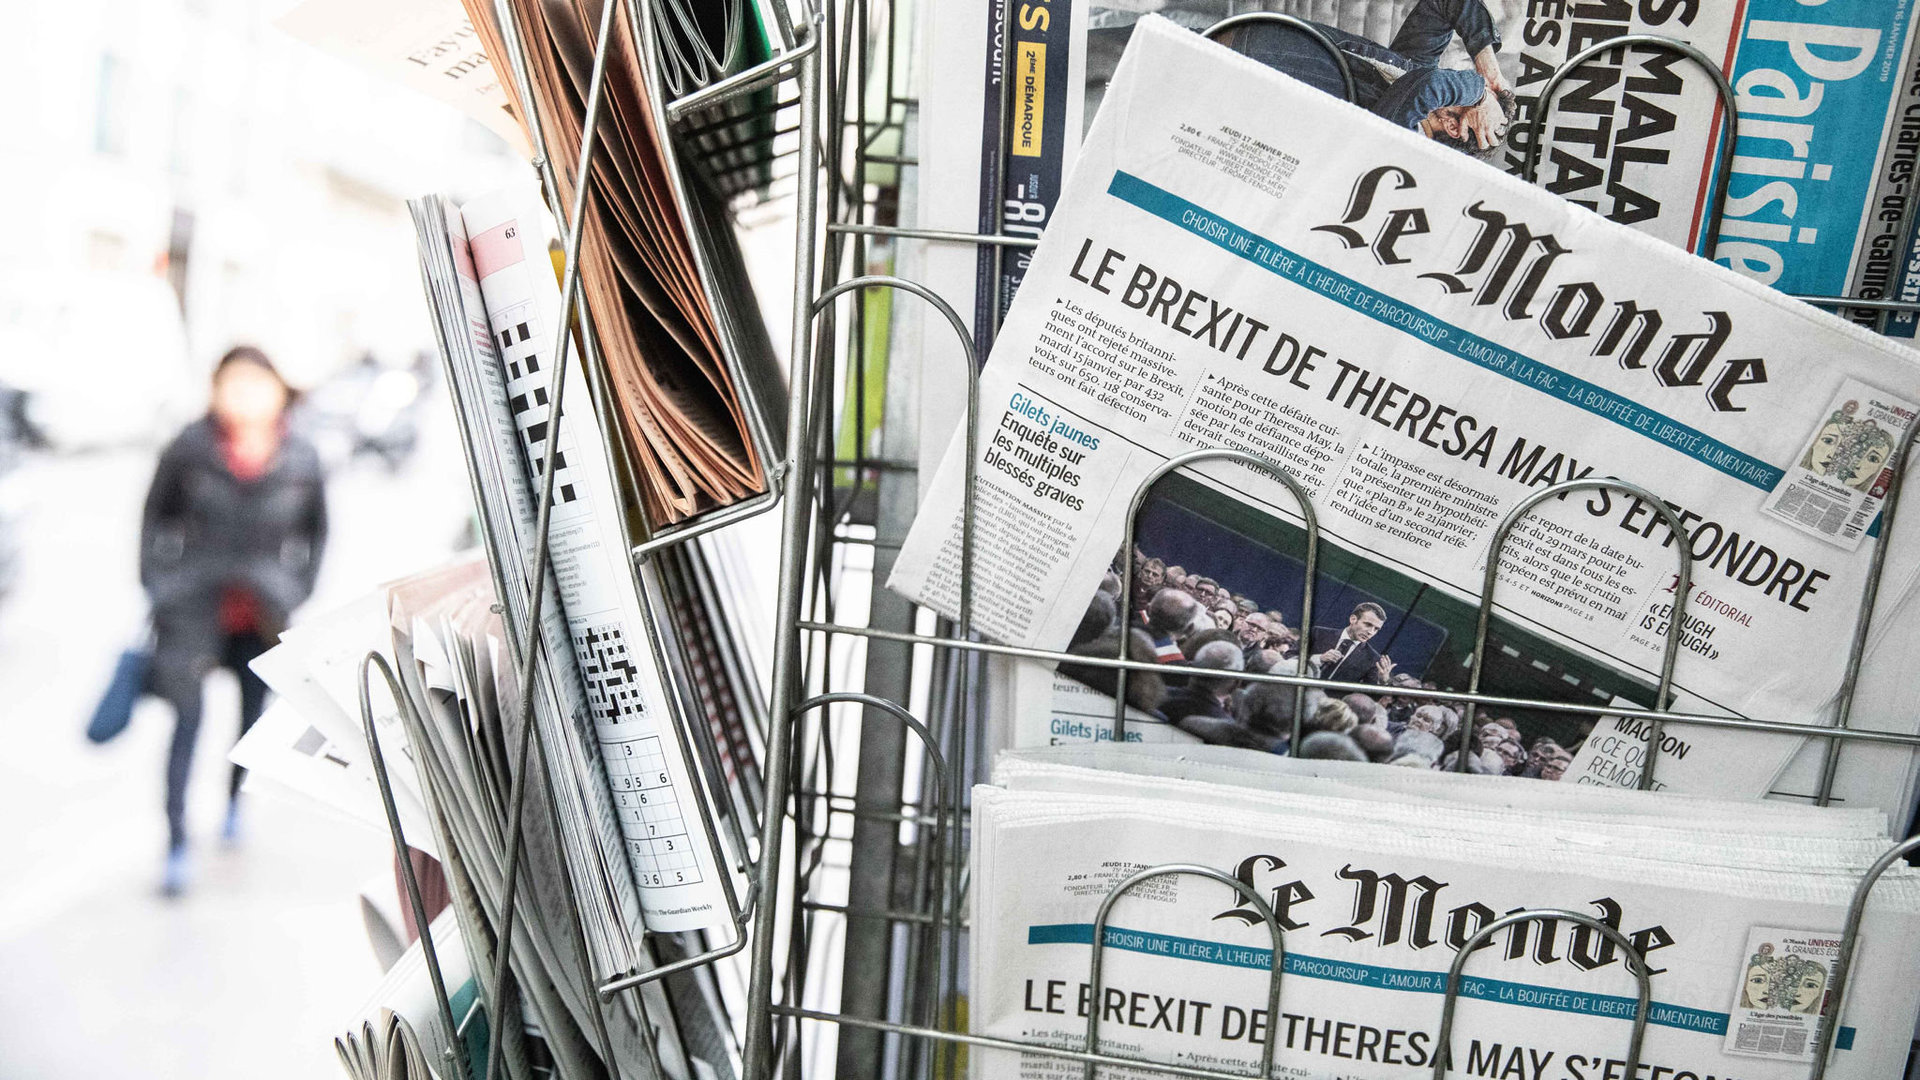 Οι εργαζόμενοι στη Le Monde μάχονται για να παραμείνουν πραγματικοί δημοσιογράφοι!